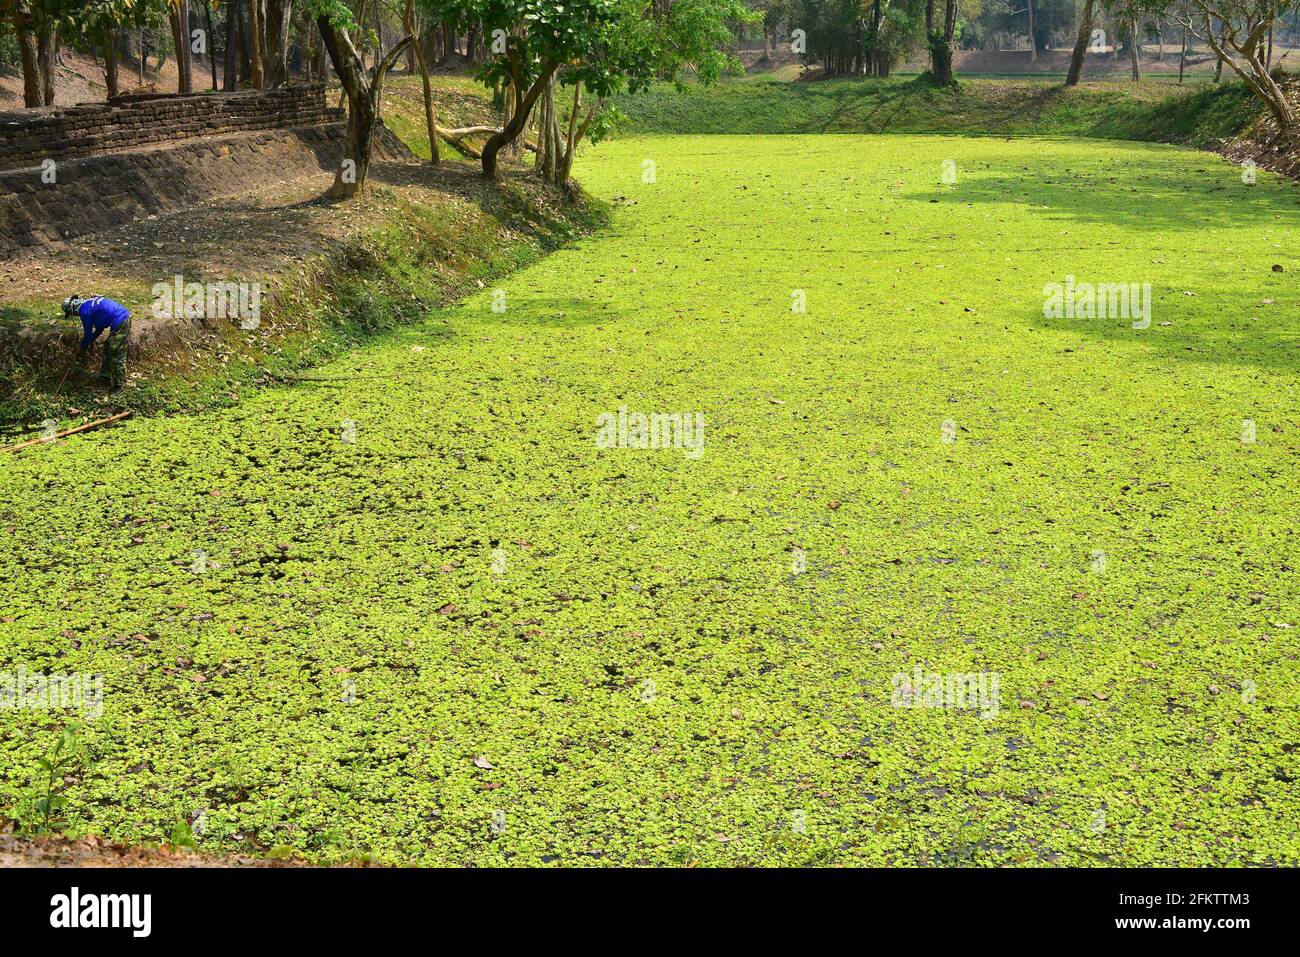 La col de agua o lechuga de agua (Pistia stratiotes) es una planta acuática invasora presente en todas las regiones tropicales. Esta foto fue tomada en Tailandia. Foto de stock